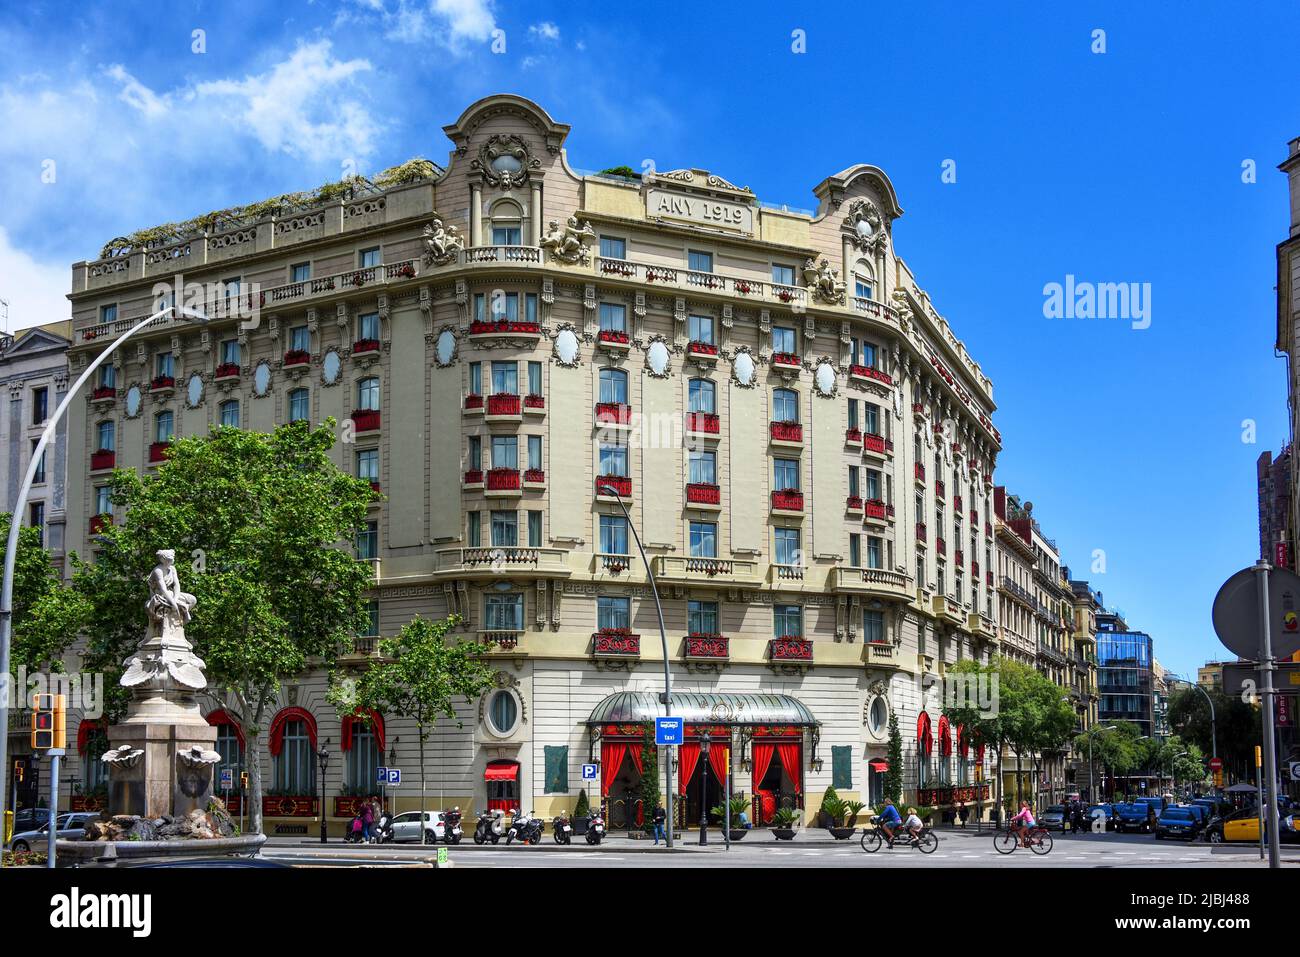 Barcellona, Spagna - 13 maggio 2018: El Palace Hotel Barcelona, un hotel di lusso a 5 stelle sulla Gran Via de les Corts Catalanes. In precedenza era conosciuto come Th Foto Stock